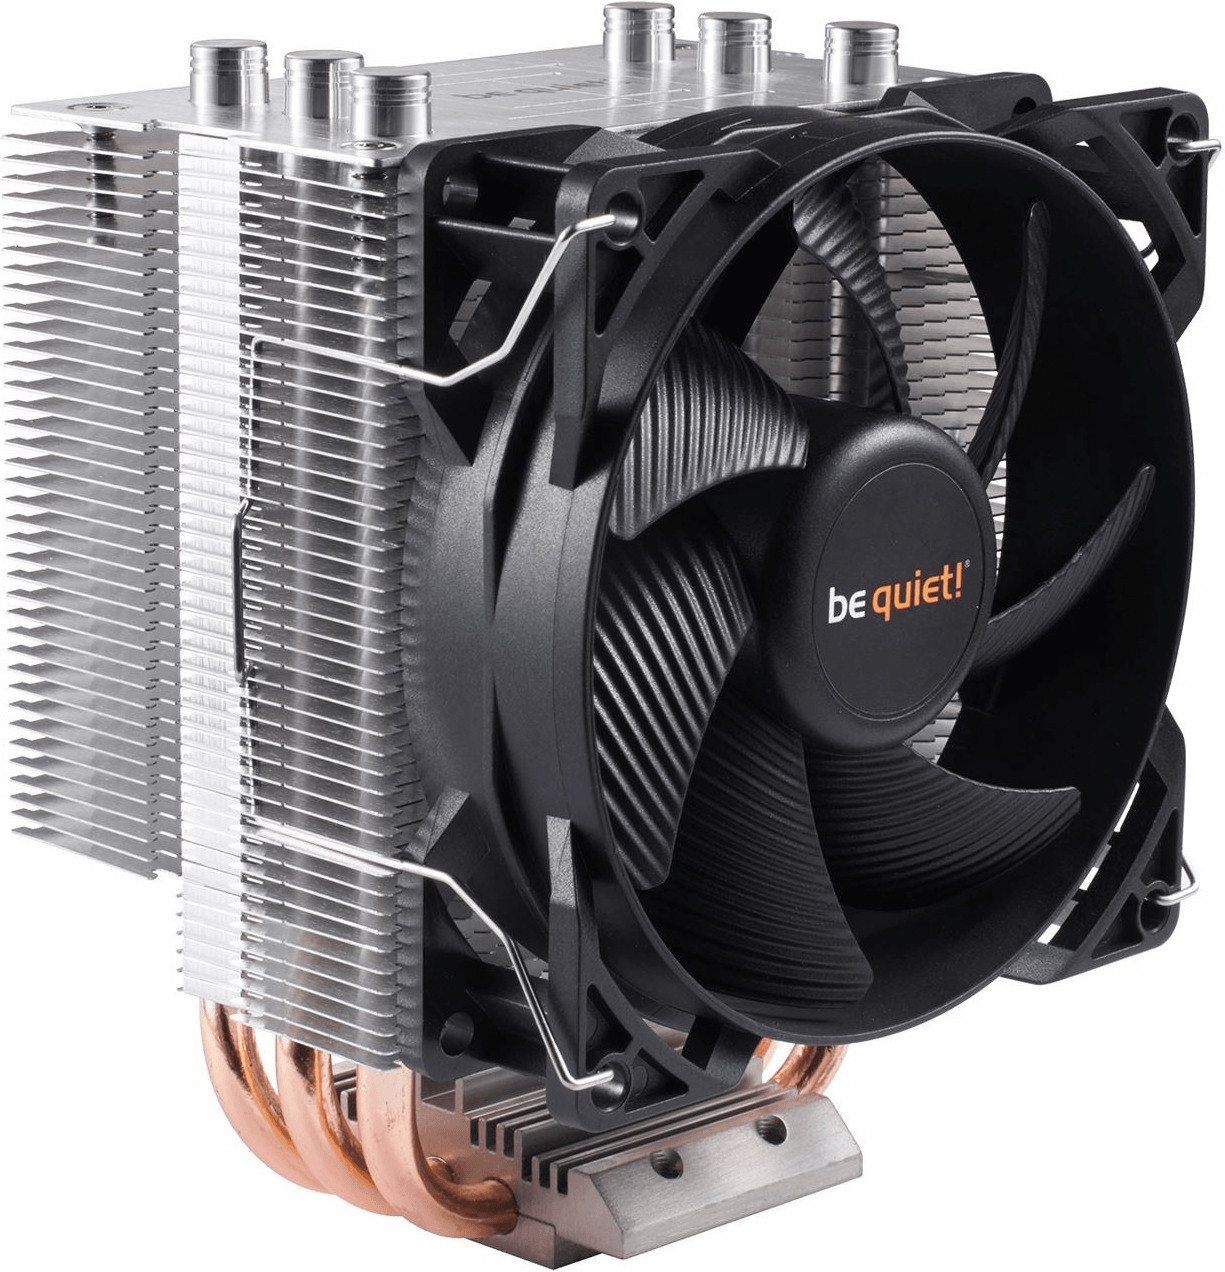 Amazon Prime - be quiet! Pure Rock Slim CPU-Luftkühler Prozessorlüfter (für Intel und AMD, BK008) für 18,99€